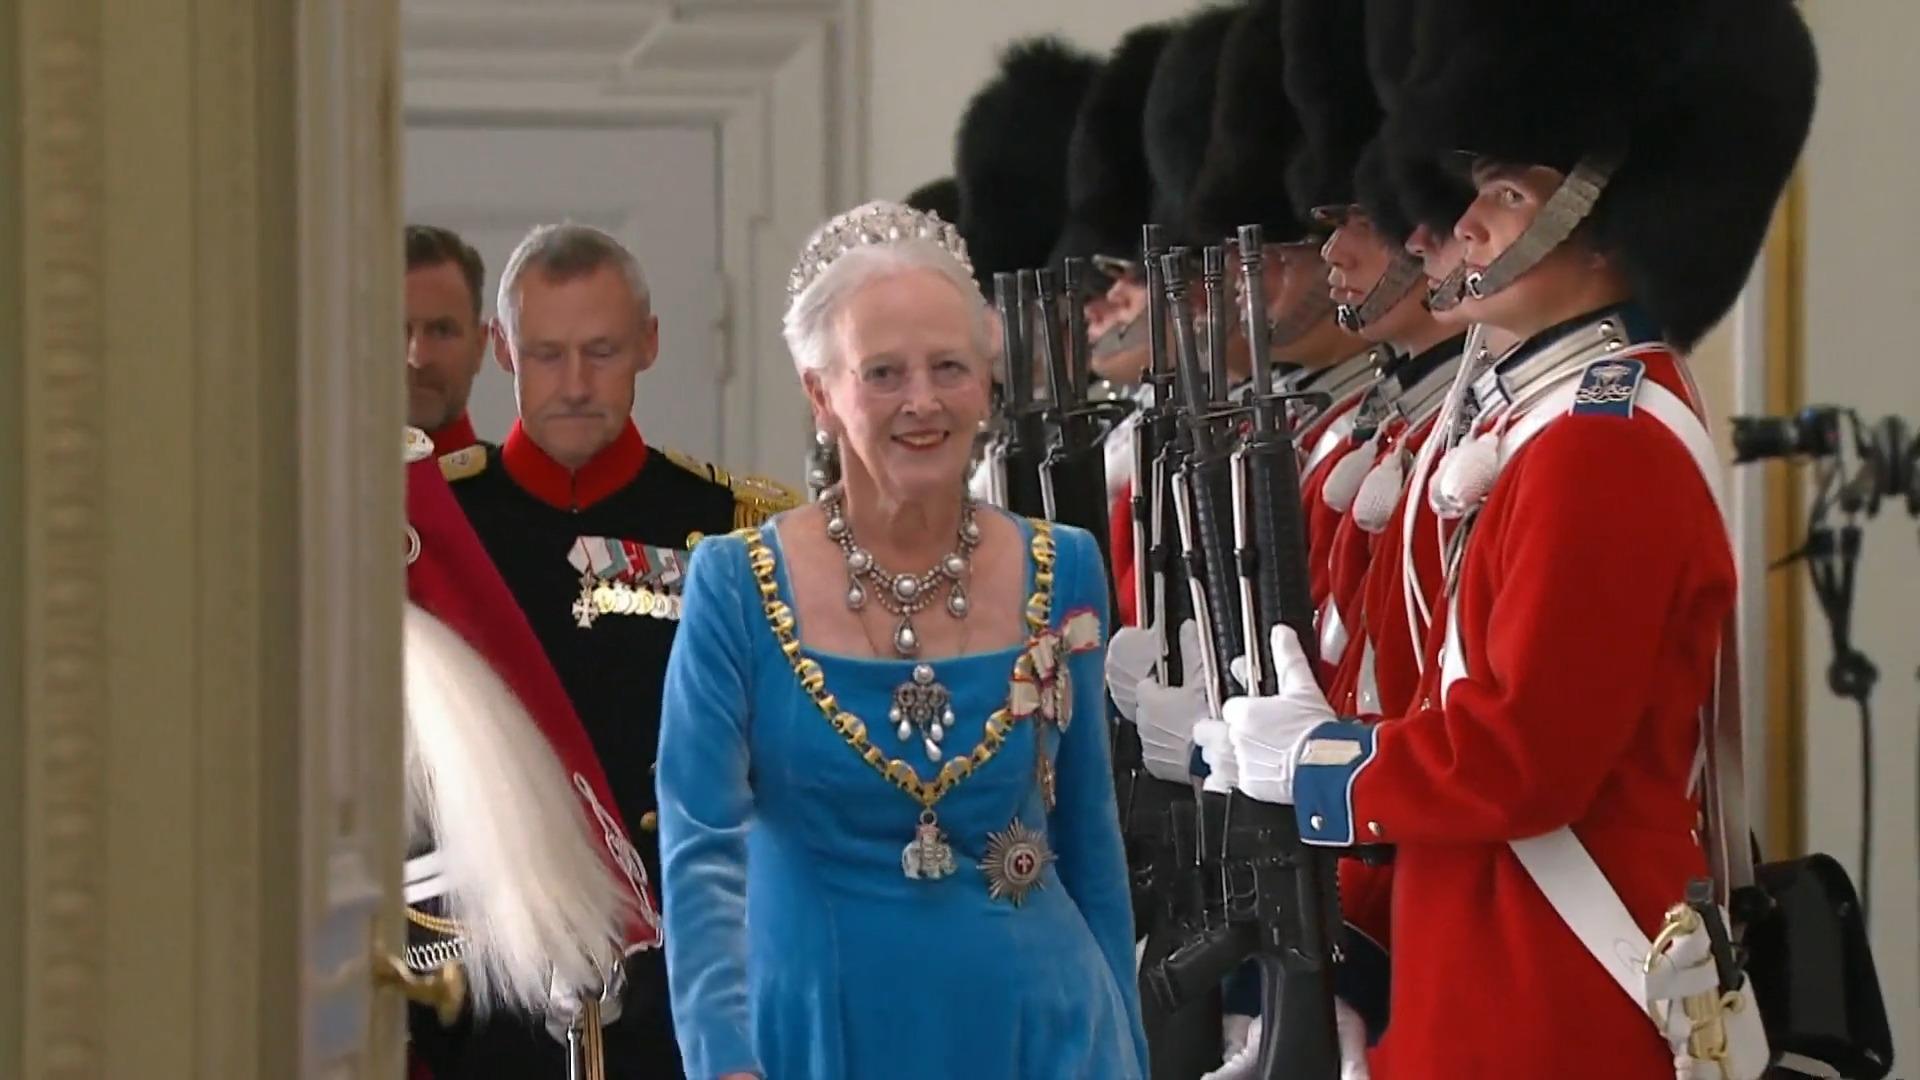 Koningin Margaret II.  Feiert zurückhalnd 50. Thronjubiläum